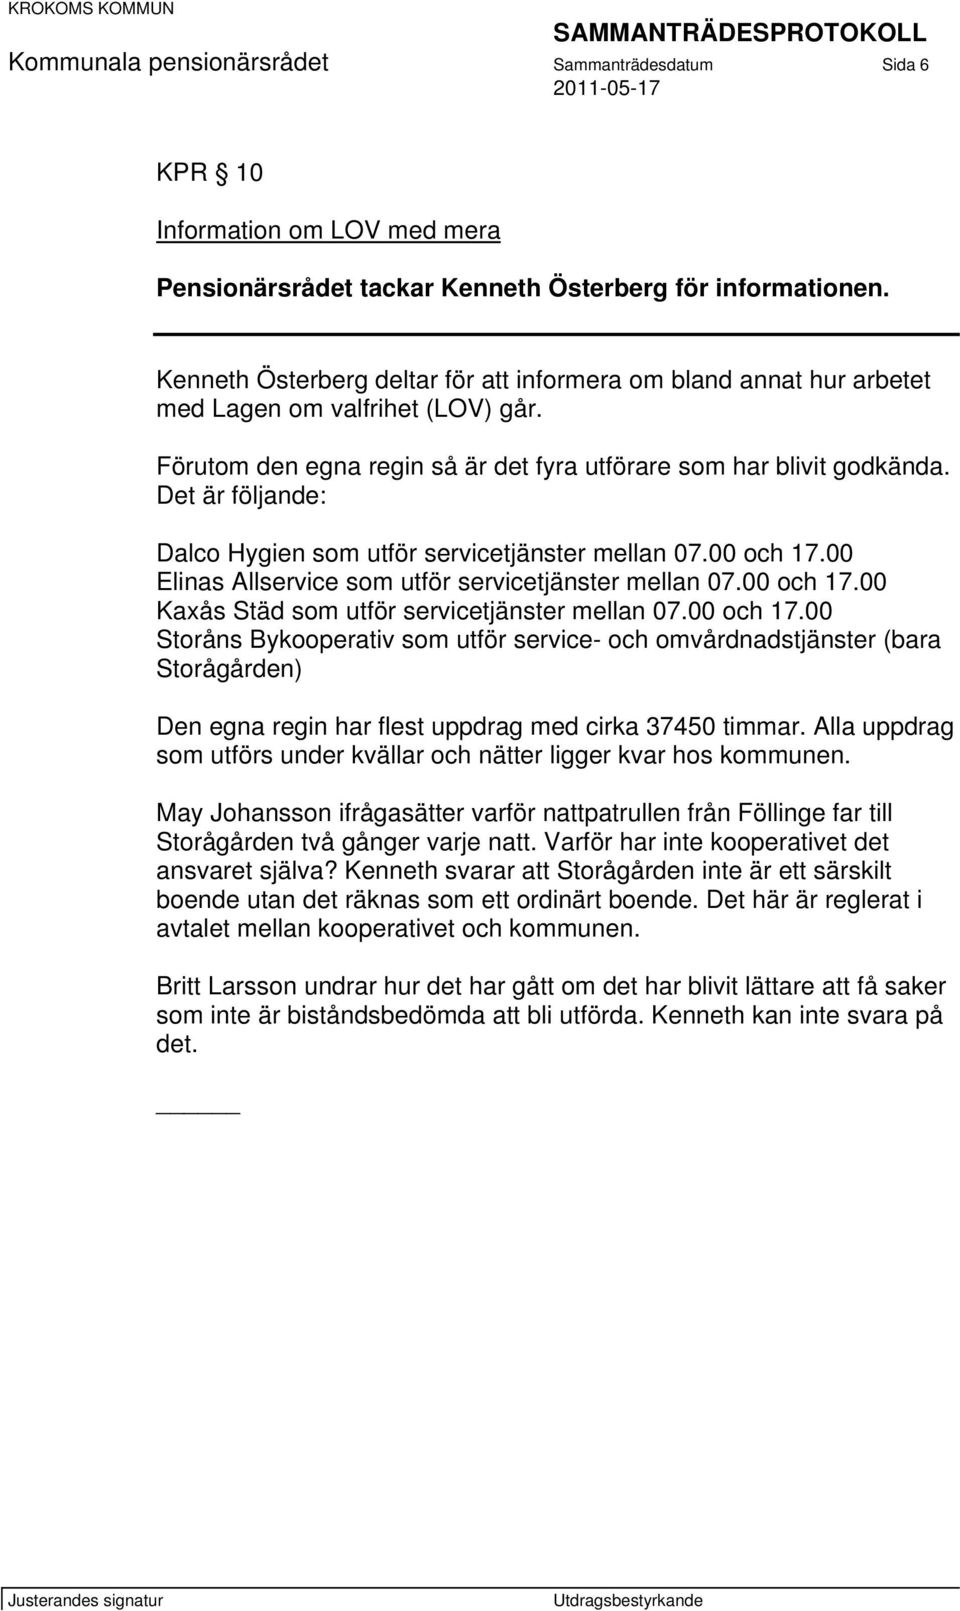 Det är följande: Dalco Hygien som utför servicetjänster mellan 07.00 och 17.00 Elinas Allservice som utför servicetjänster mellan 07.00 och 17.00 Kaxås Städ som utför servicetjänster mellan 07.